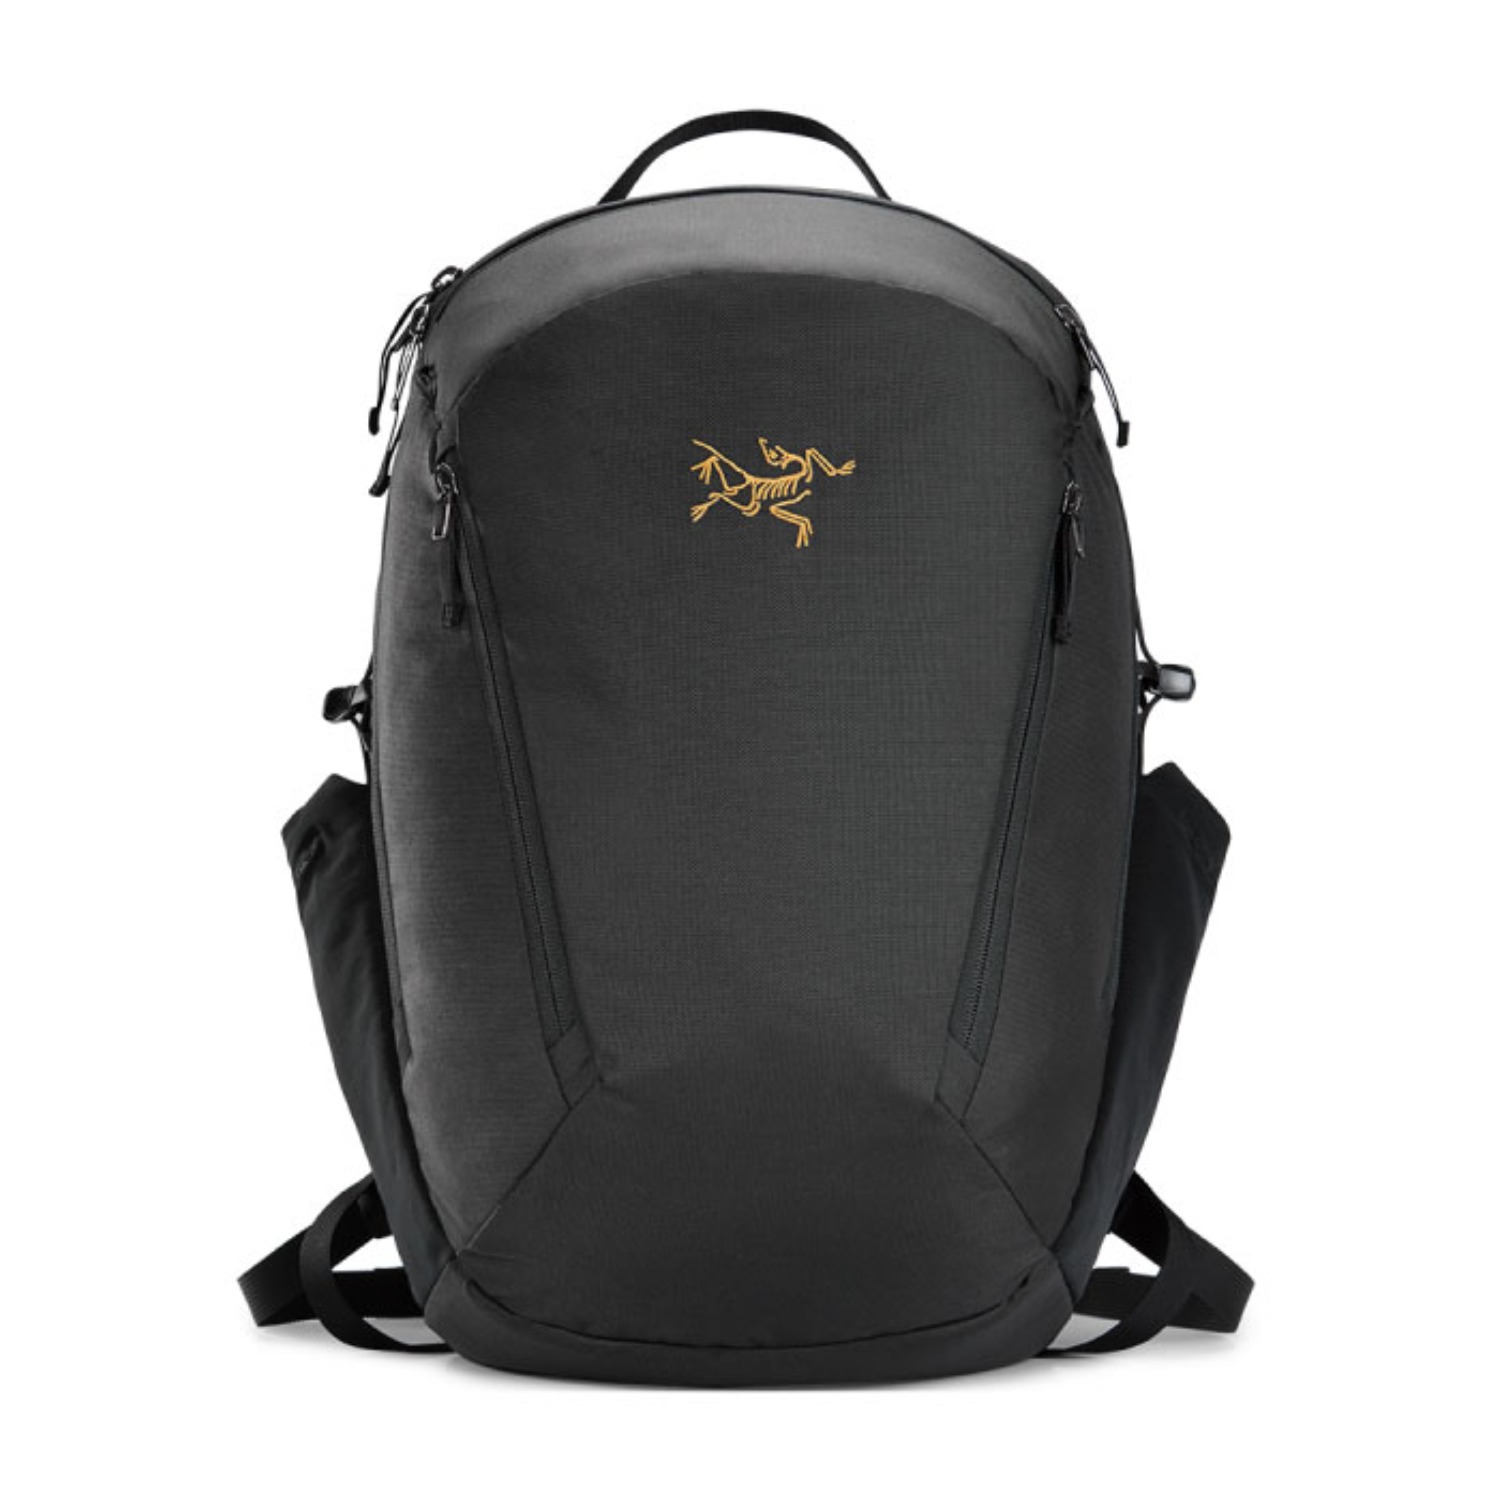 mantis 26 backpack black